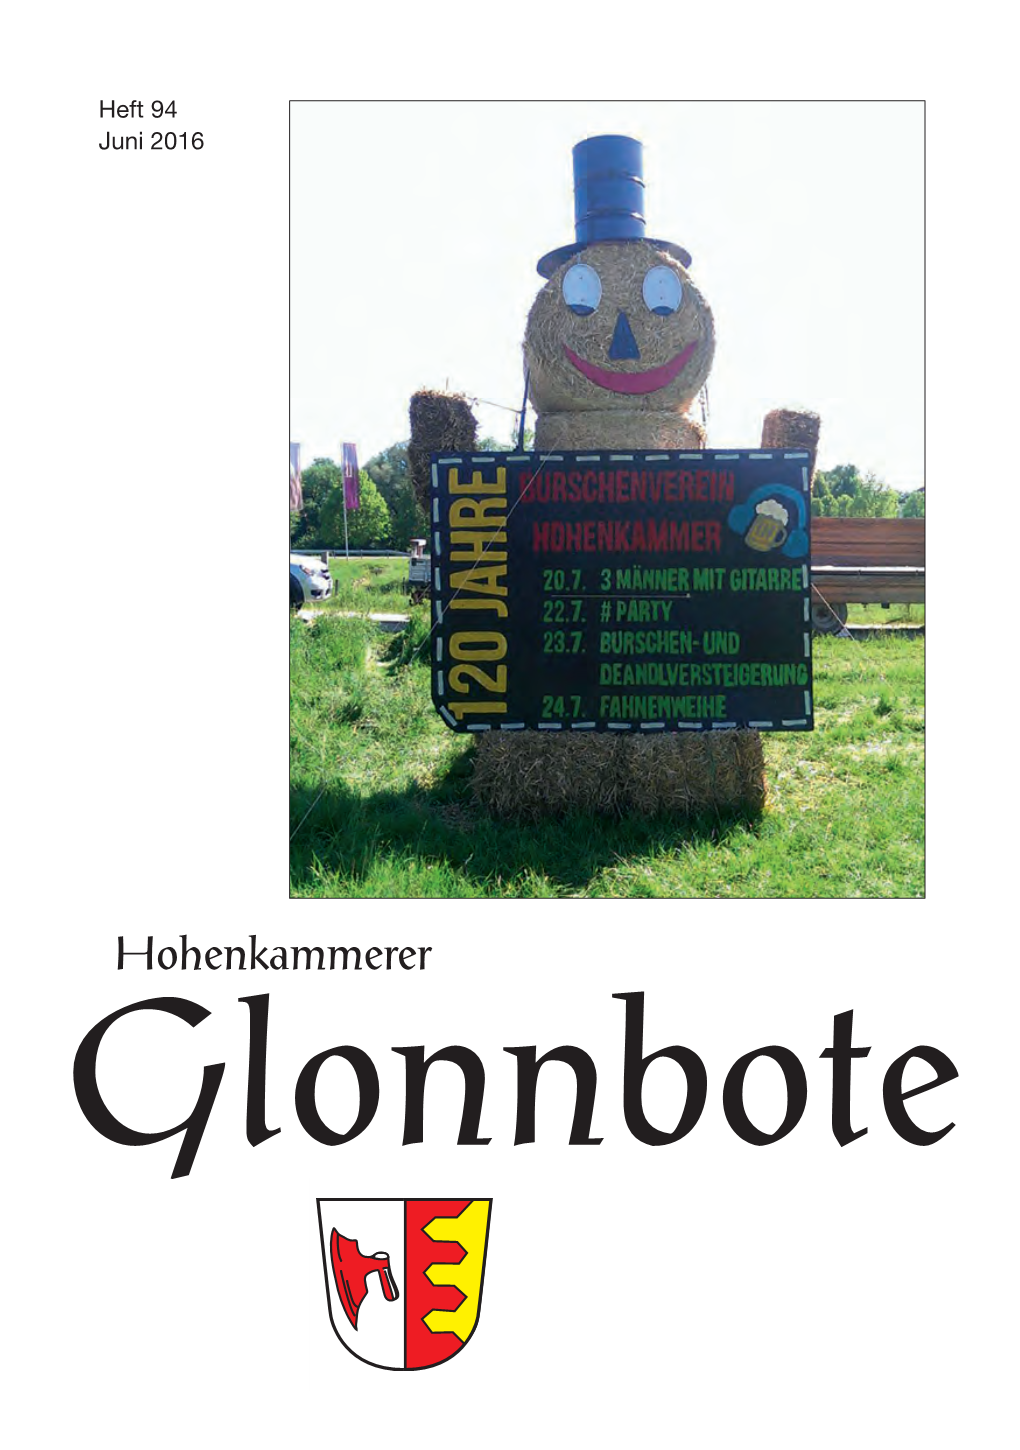 Glonnbote 52.Qxd 27.06.2016 15:41 Seite 1